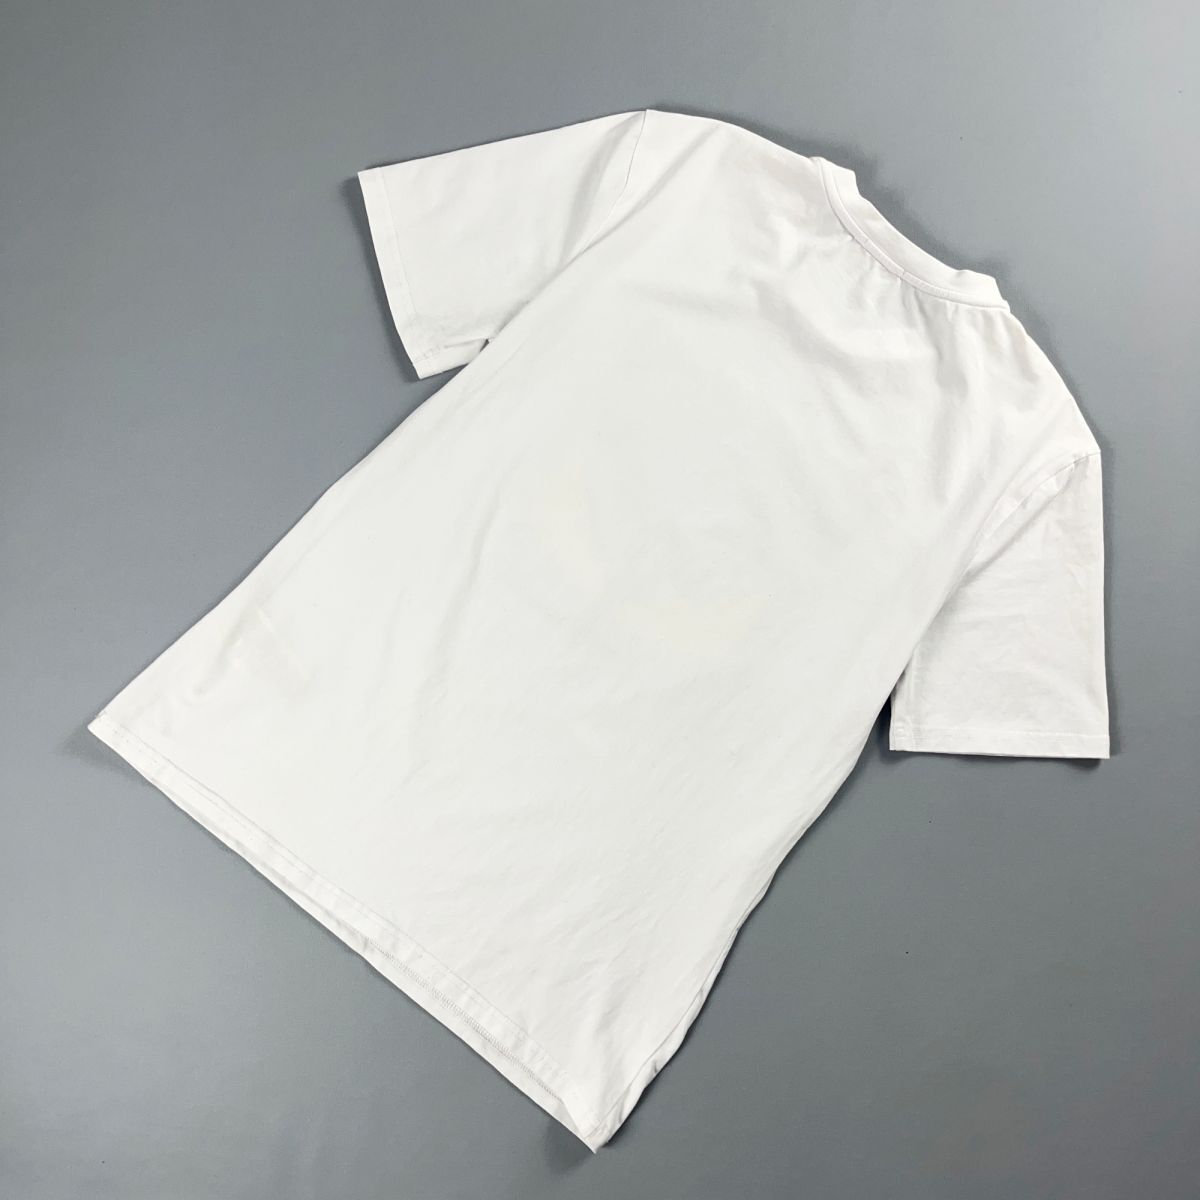 FENDI フェンディ イタリア製 ラインストーン デザインTシャツ 半袖カットソー トップス メンズ 白 ホワイト サイズM*NC332_画像4